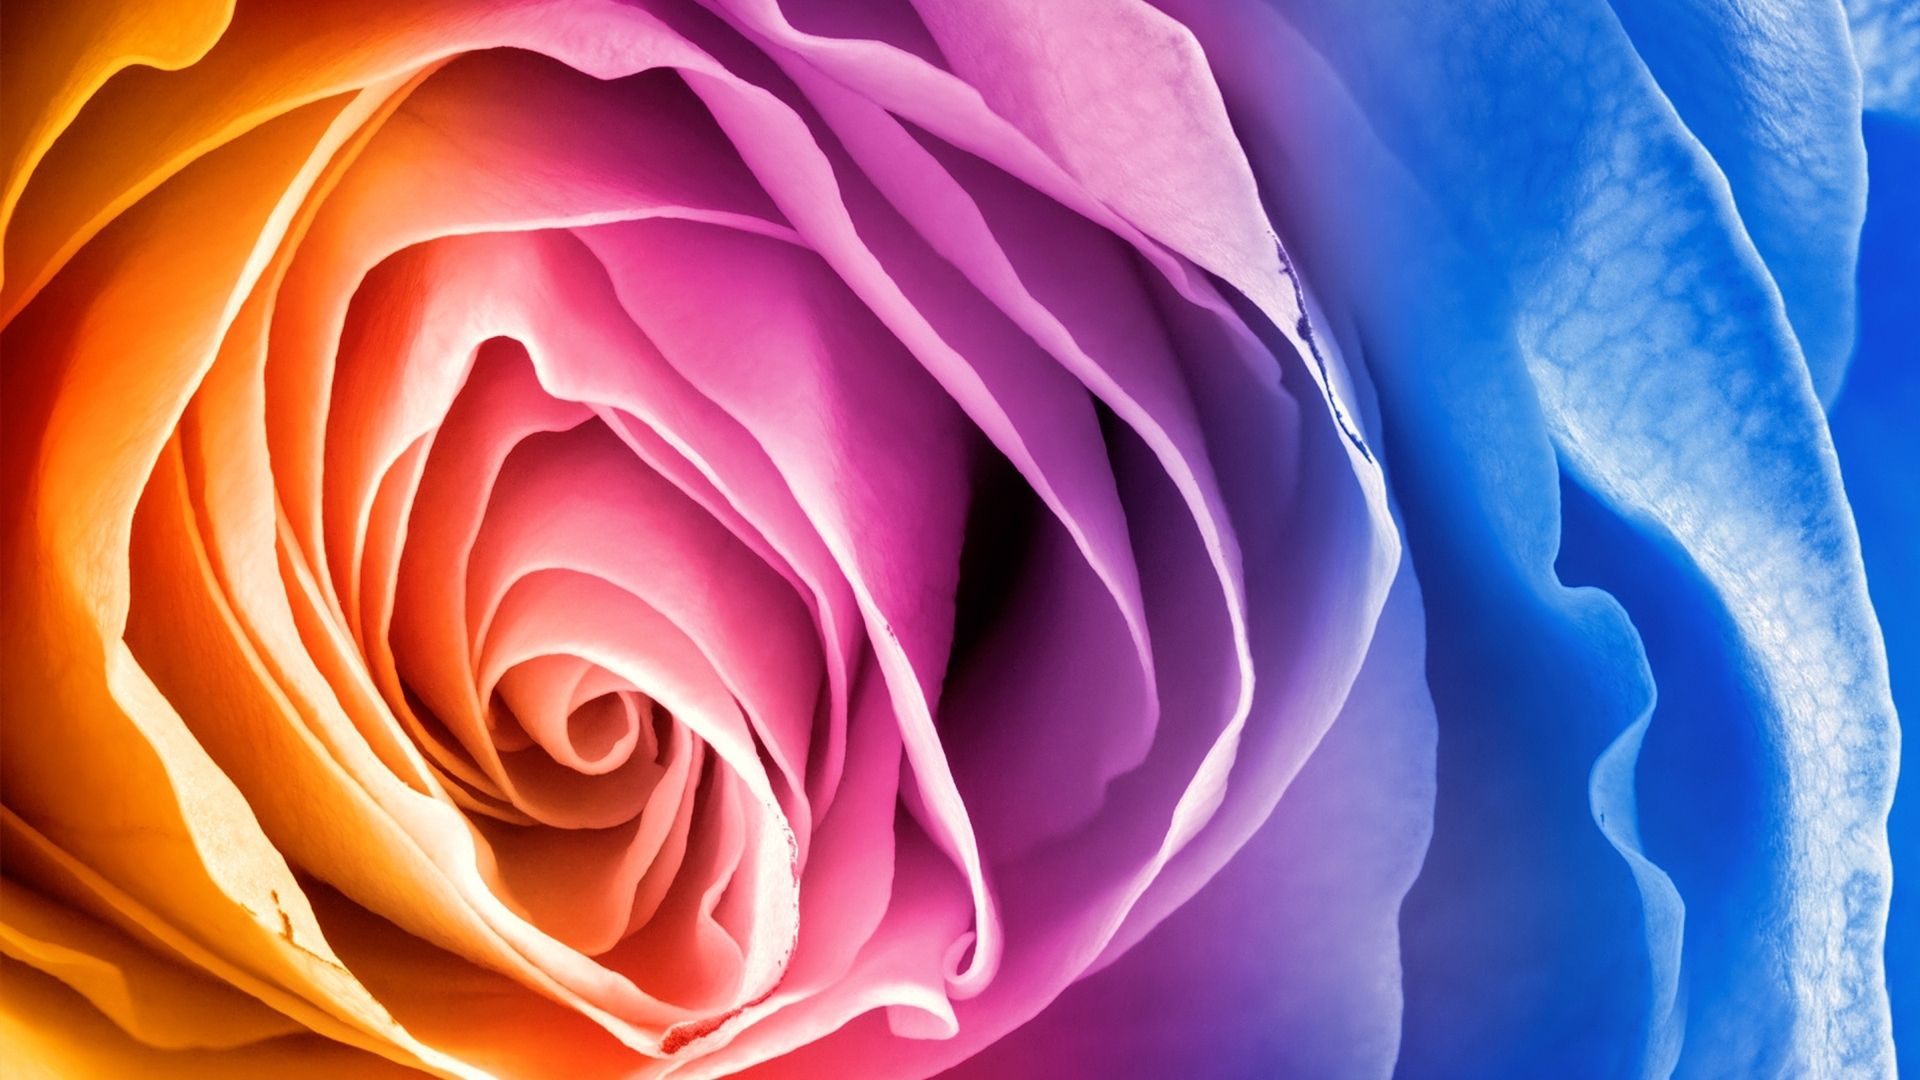 Rainbow rose MacBook Air Wallpaper Download